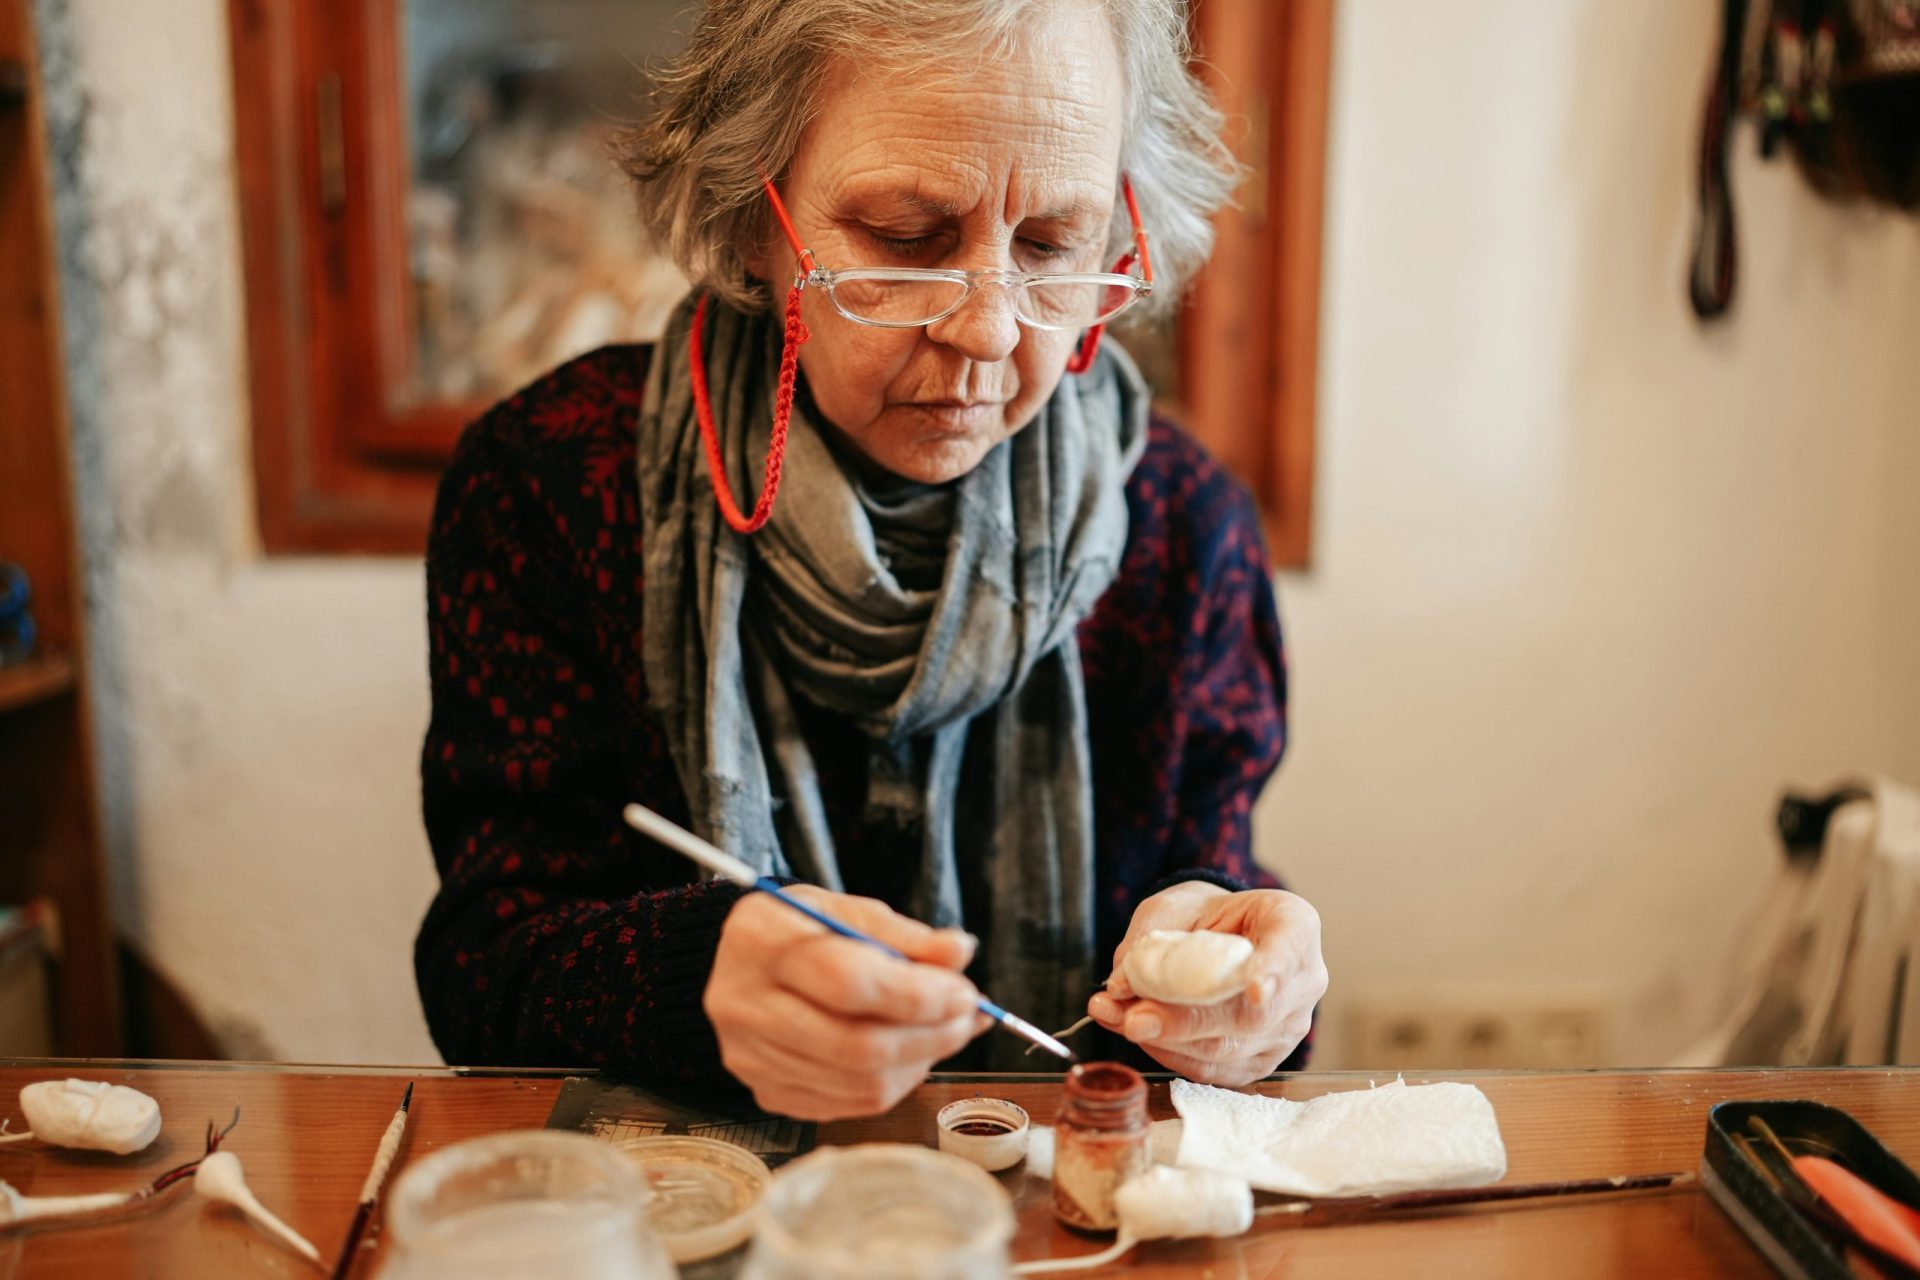 Persona mayor haciendo una manualidad, un ejemplo de los beneficios terapéuticos de las manualidades